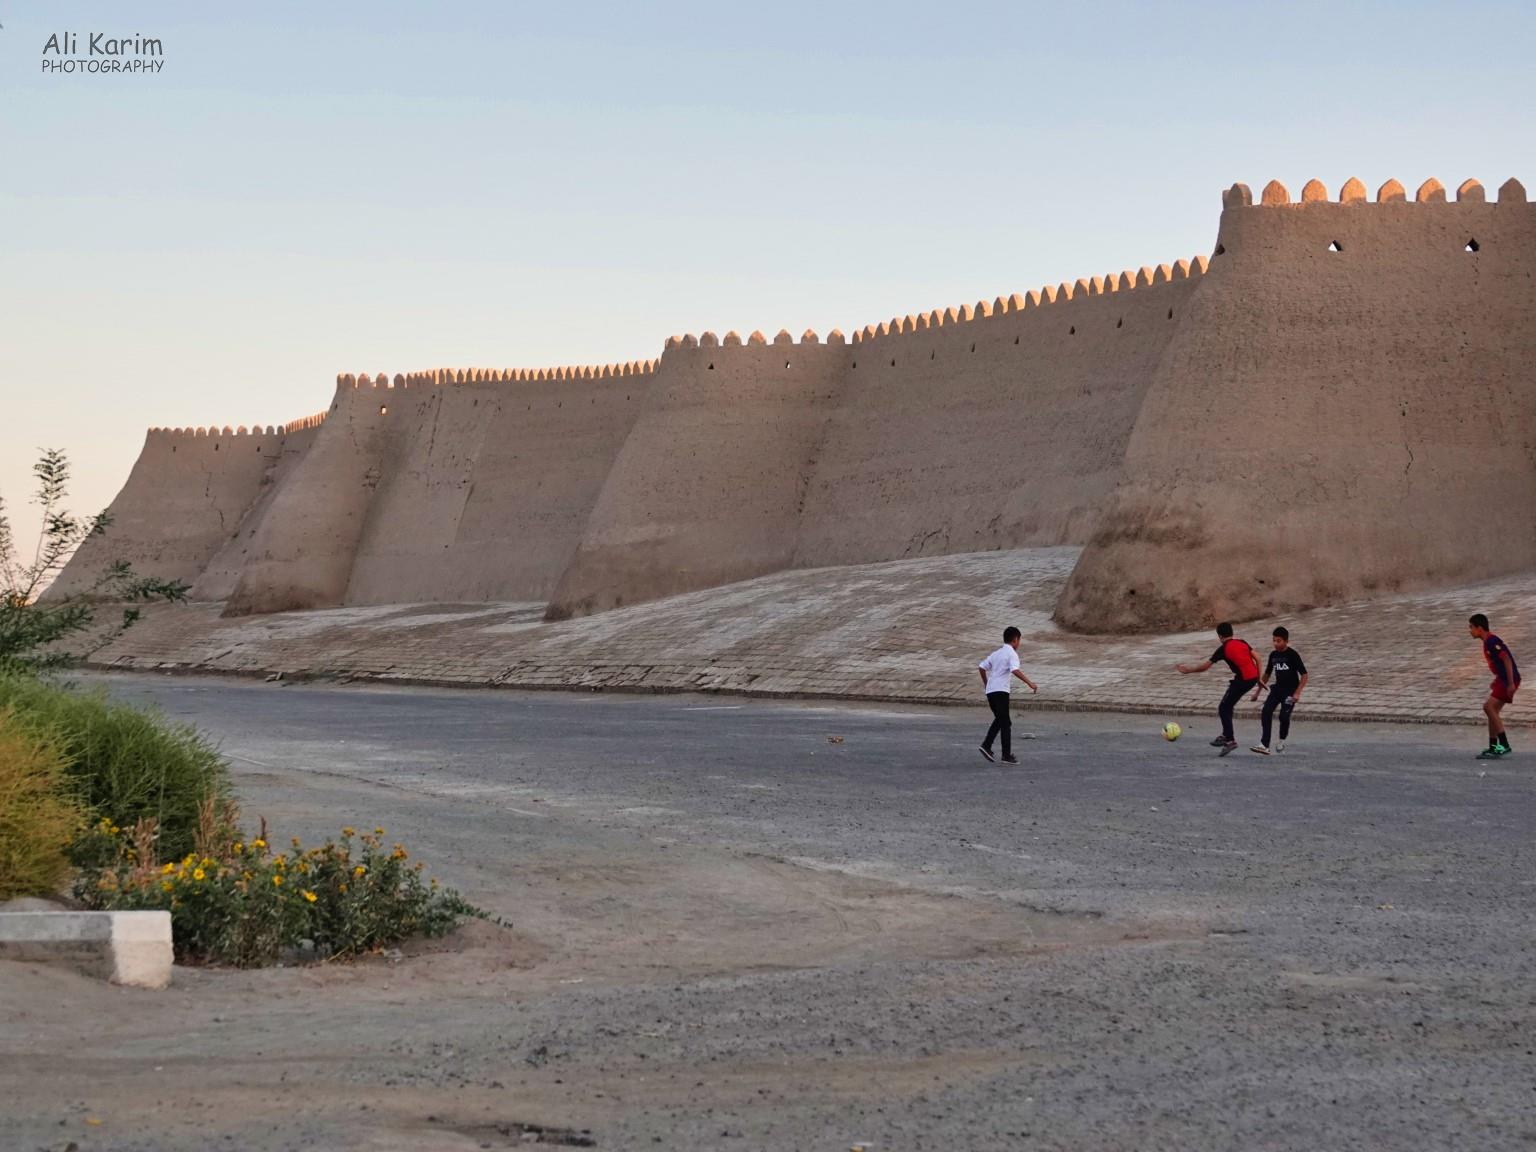 Khiva, Oct 2019, Arrived at Ichan Kala, inner walled city of Khiva